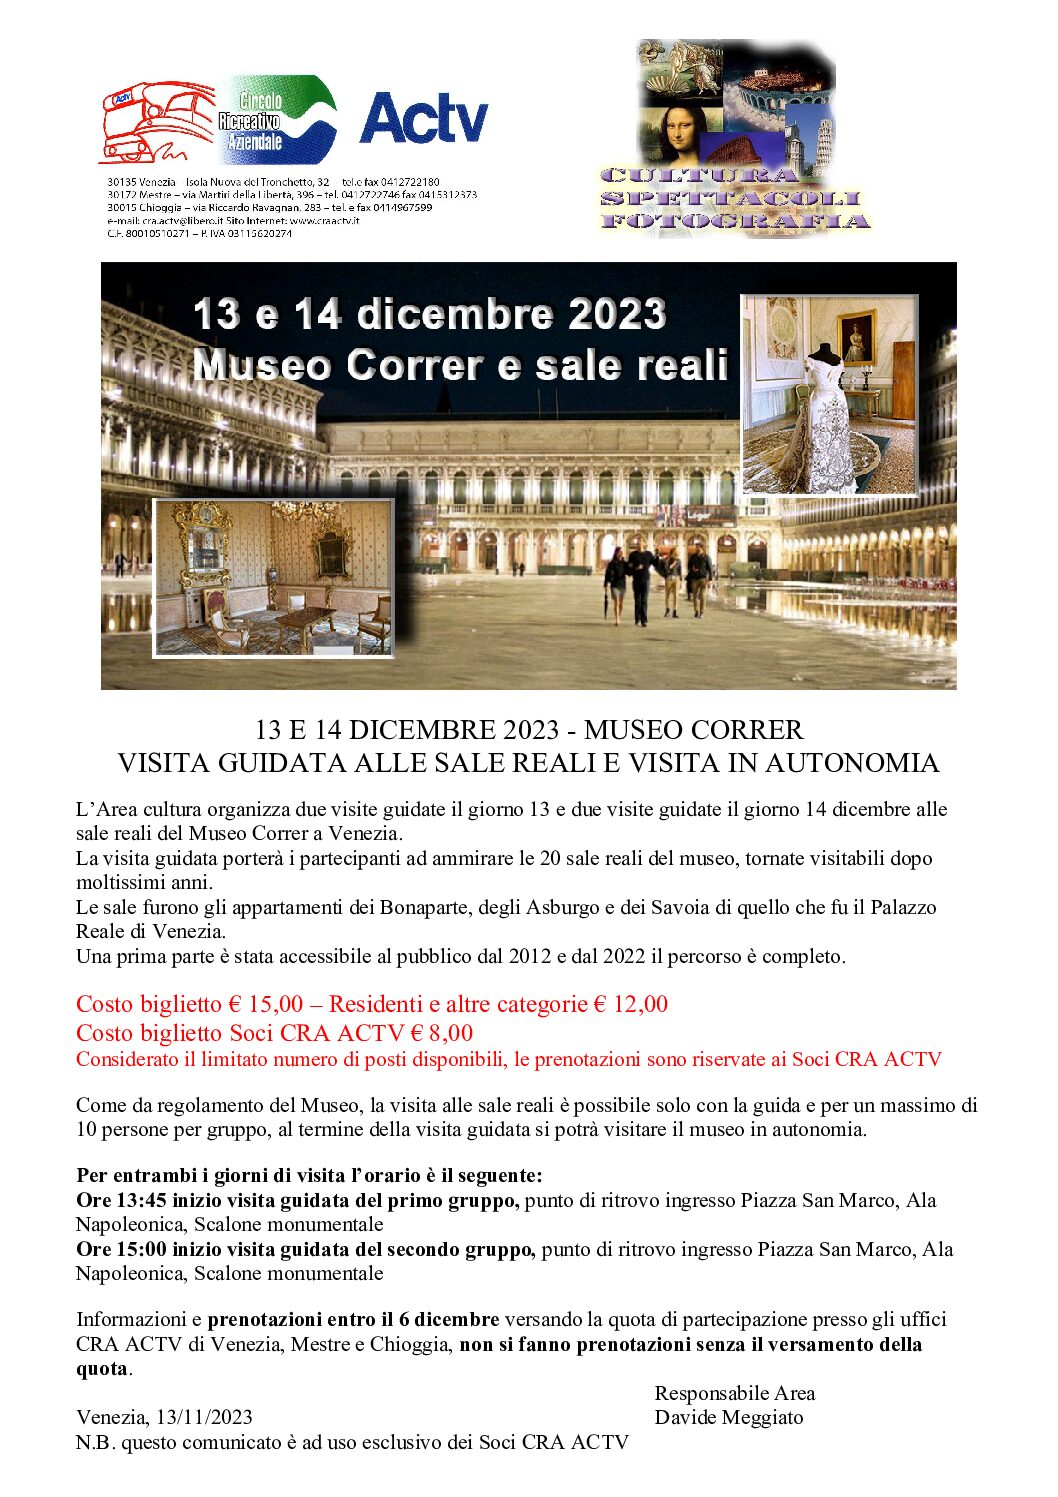 13 e 14 dicembre 2023 – Visita al Museo Correr e sale reali